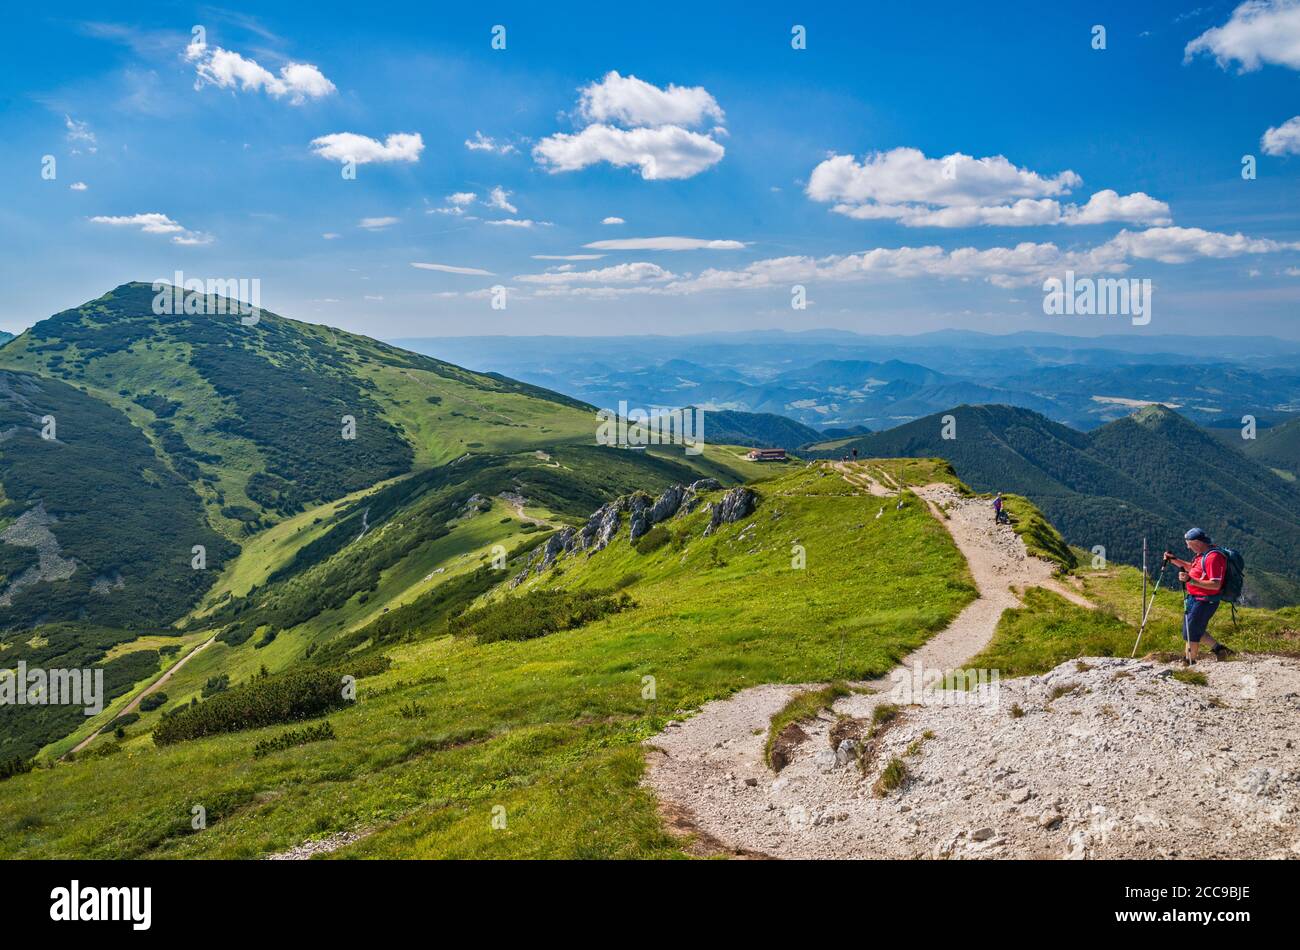 Velky Krivan massif sur la gauche, Snilovske sedlo (col) au centre, randonneur sur le sentier du sommet de Chleb, parc national de Mala Fatra, région de Zilina, Slovaquie Banque D'Images